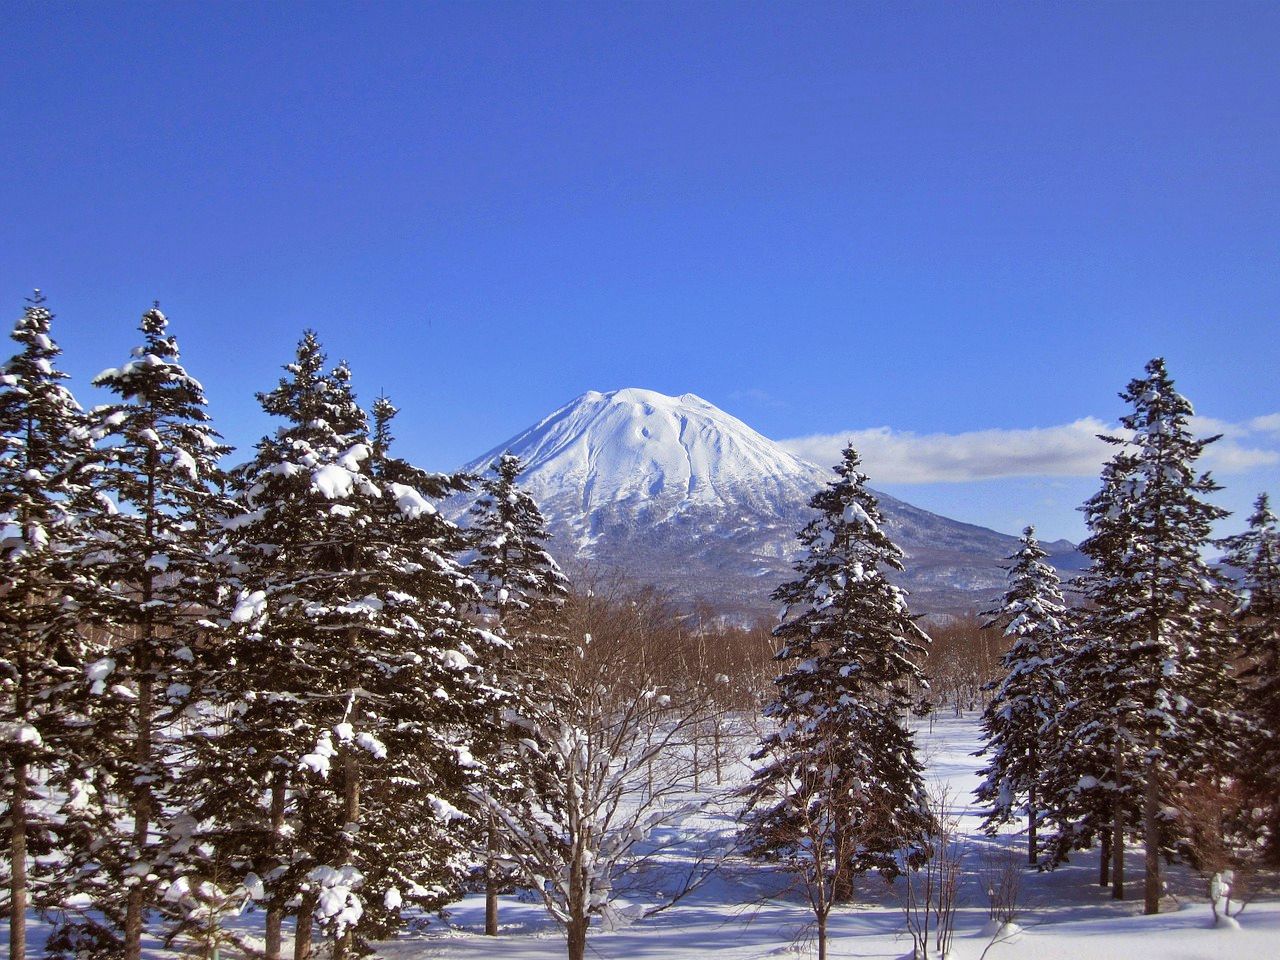 Mount Yotei, Niseko, Japan 